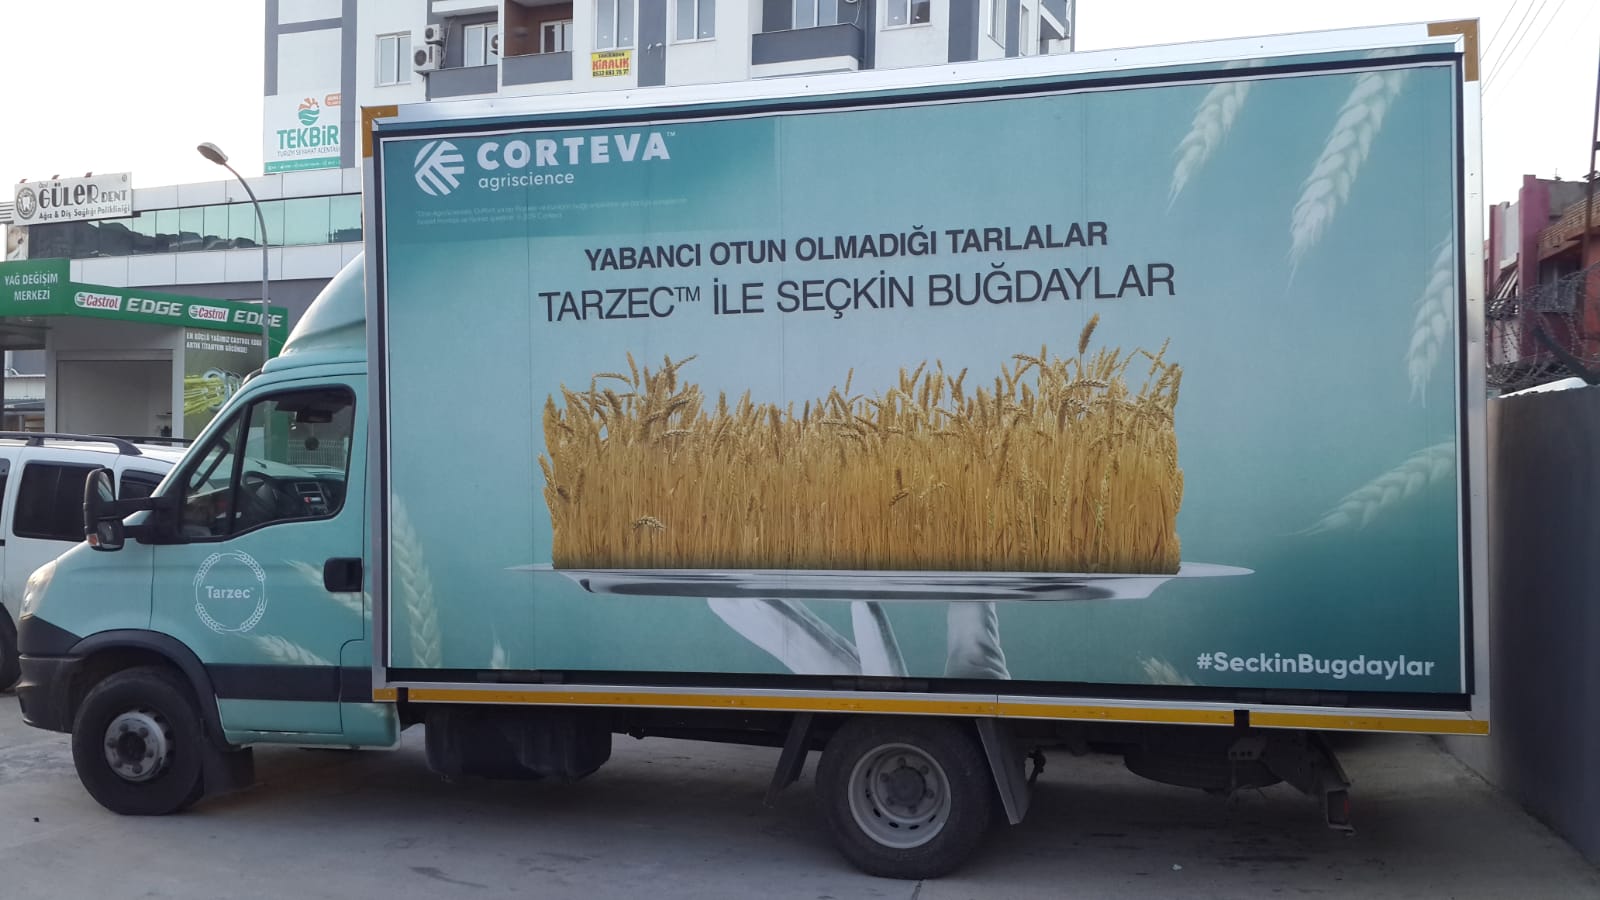 Corteva - Seçkin Buğdaylar 